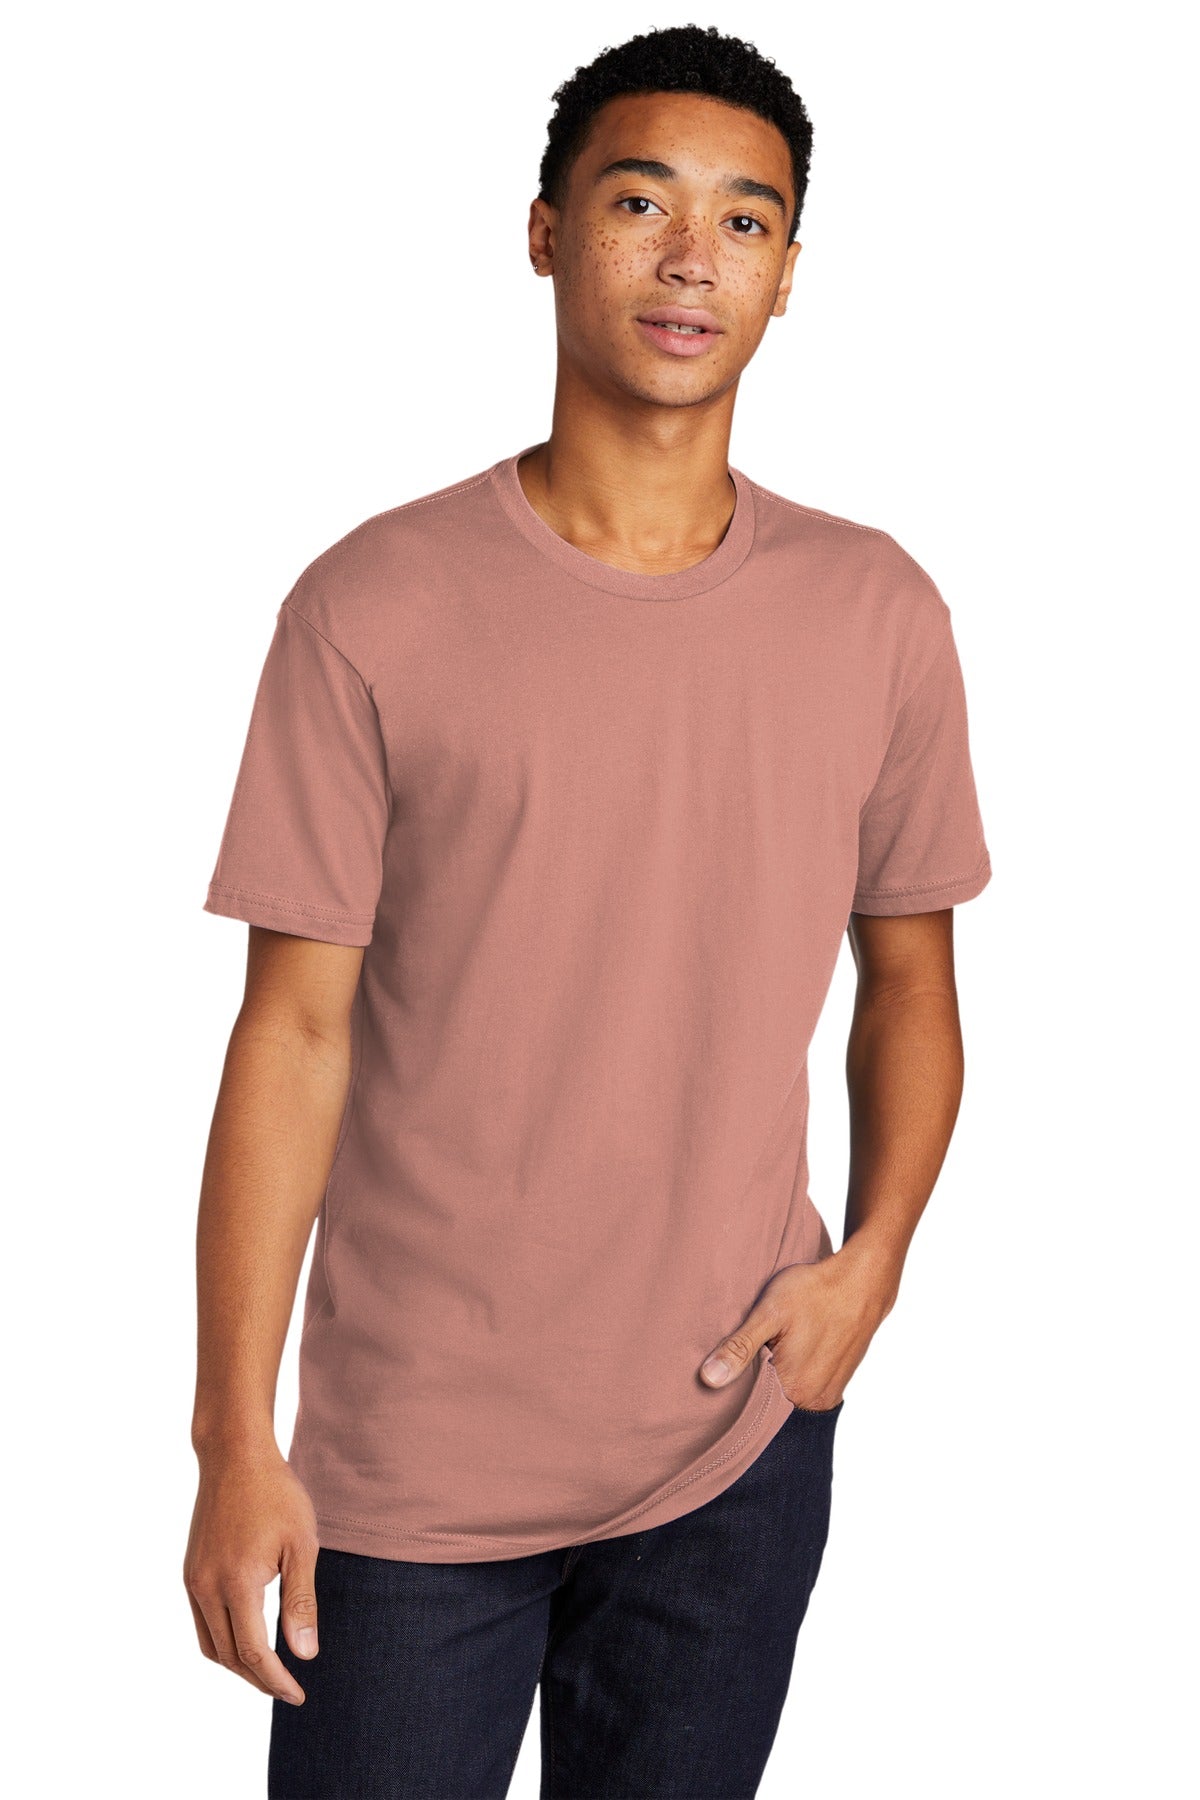 T-Shirts Desert Pink Next Level